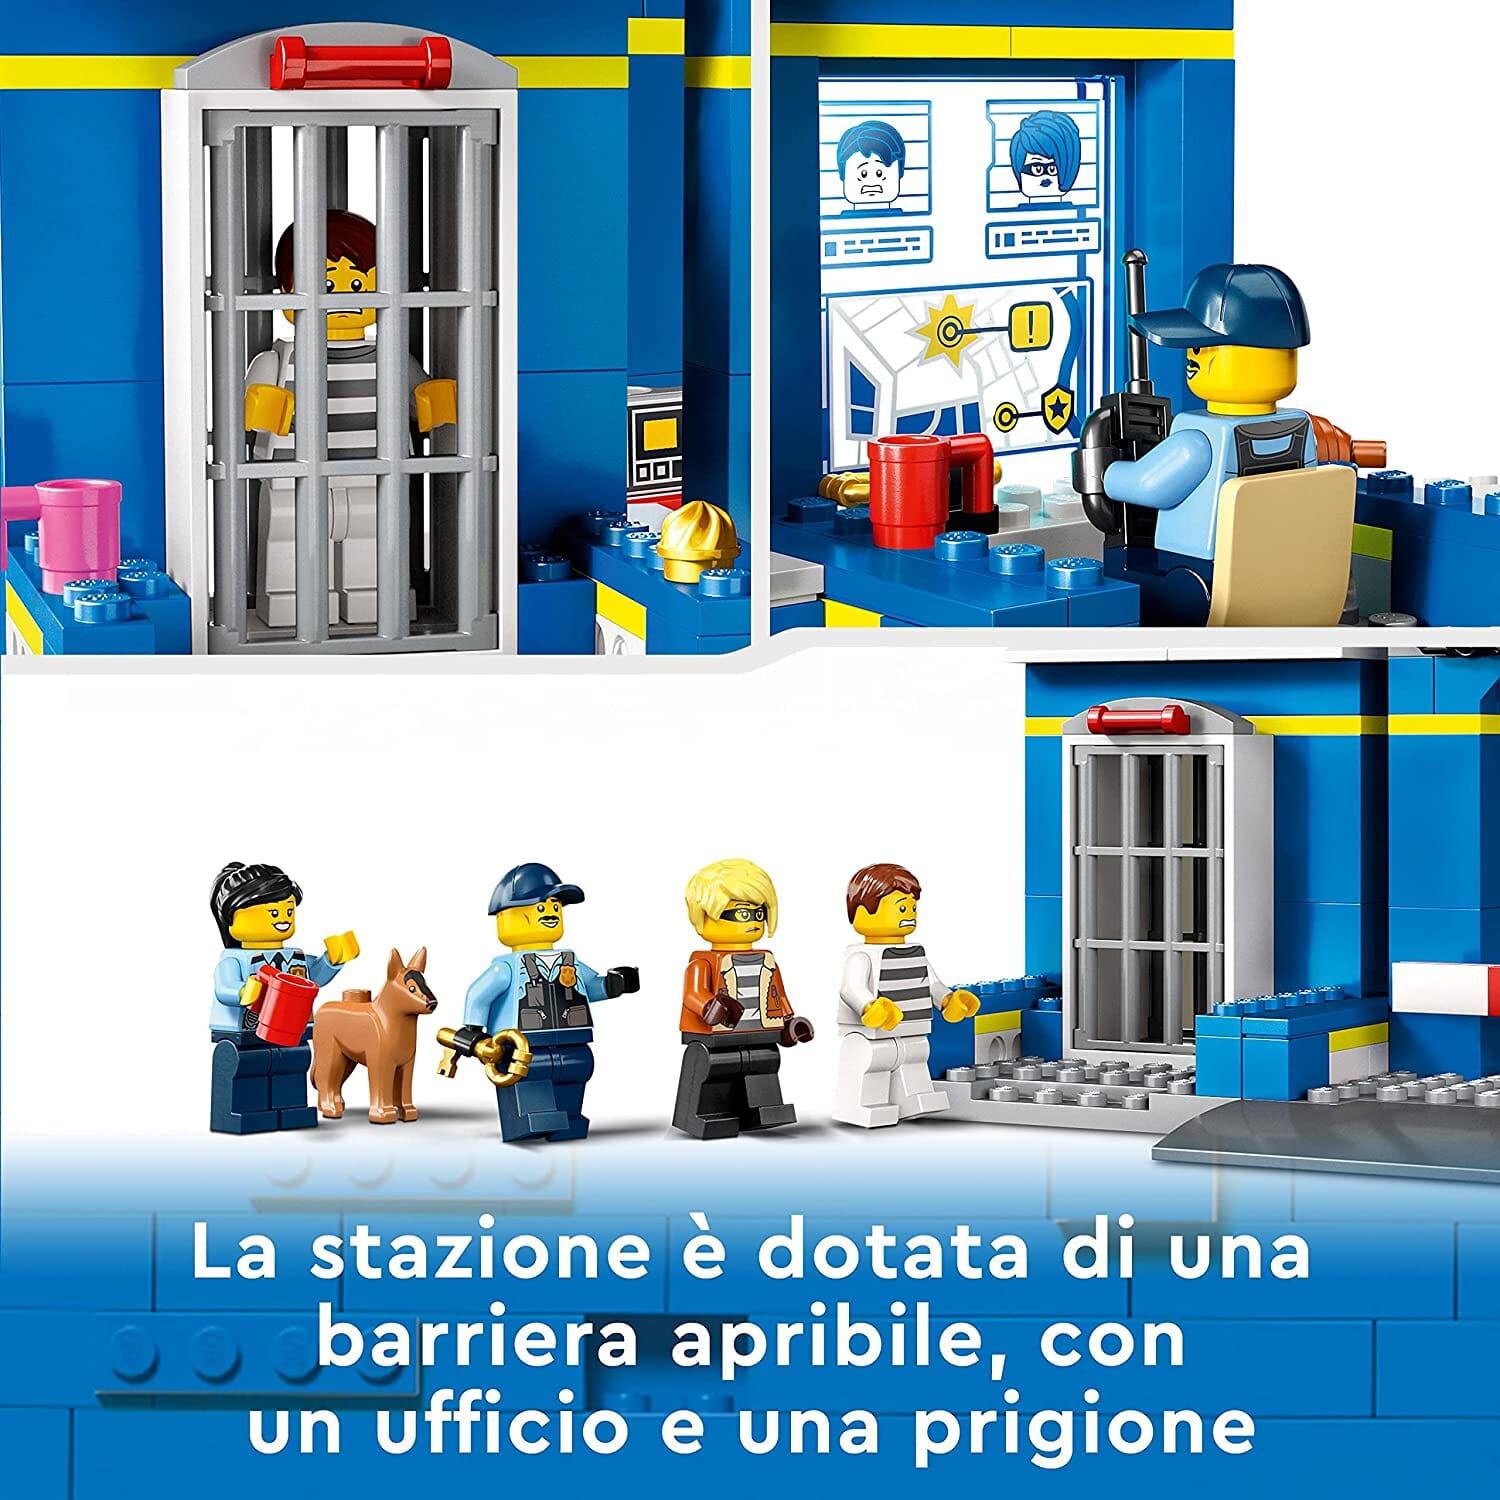 LEGO 60370 City Inseguimento alla Stazione di Polizia con Macchina e Moto LEGO 